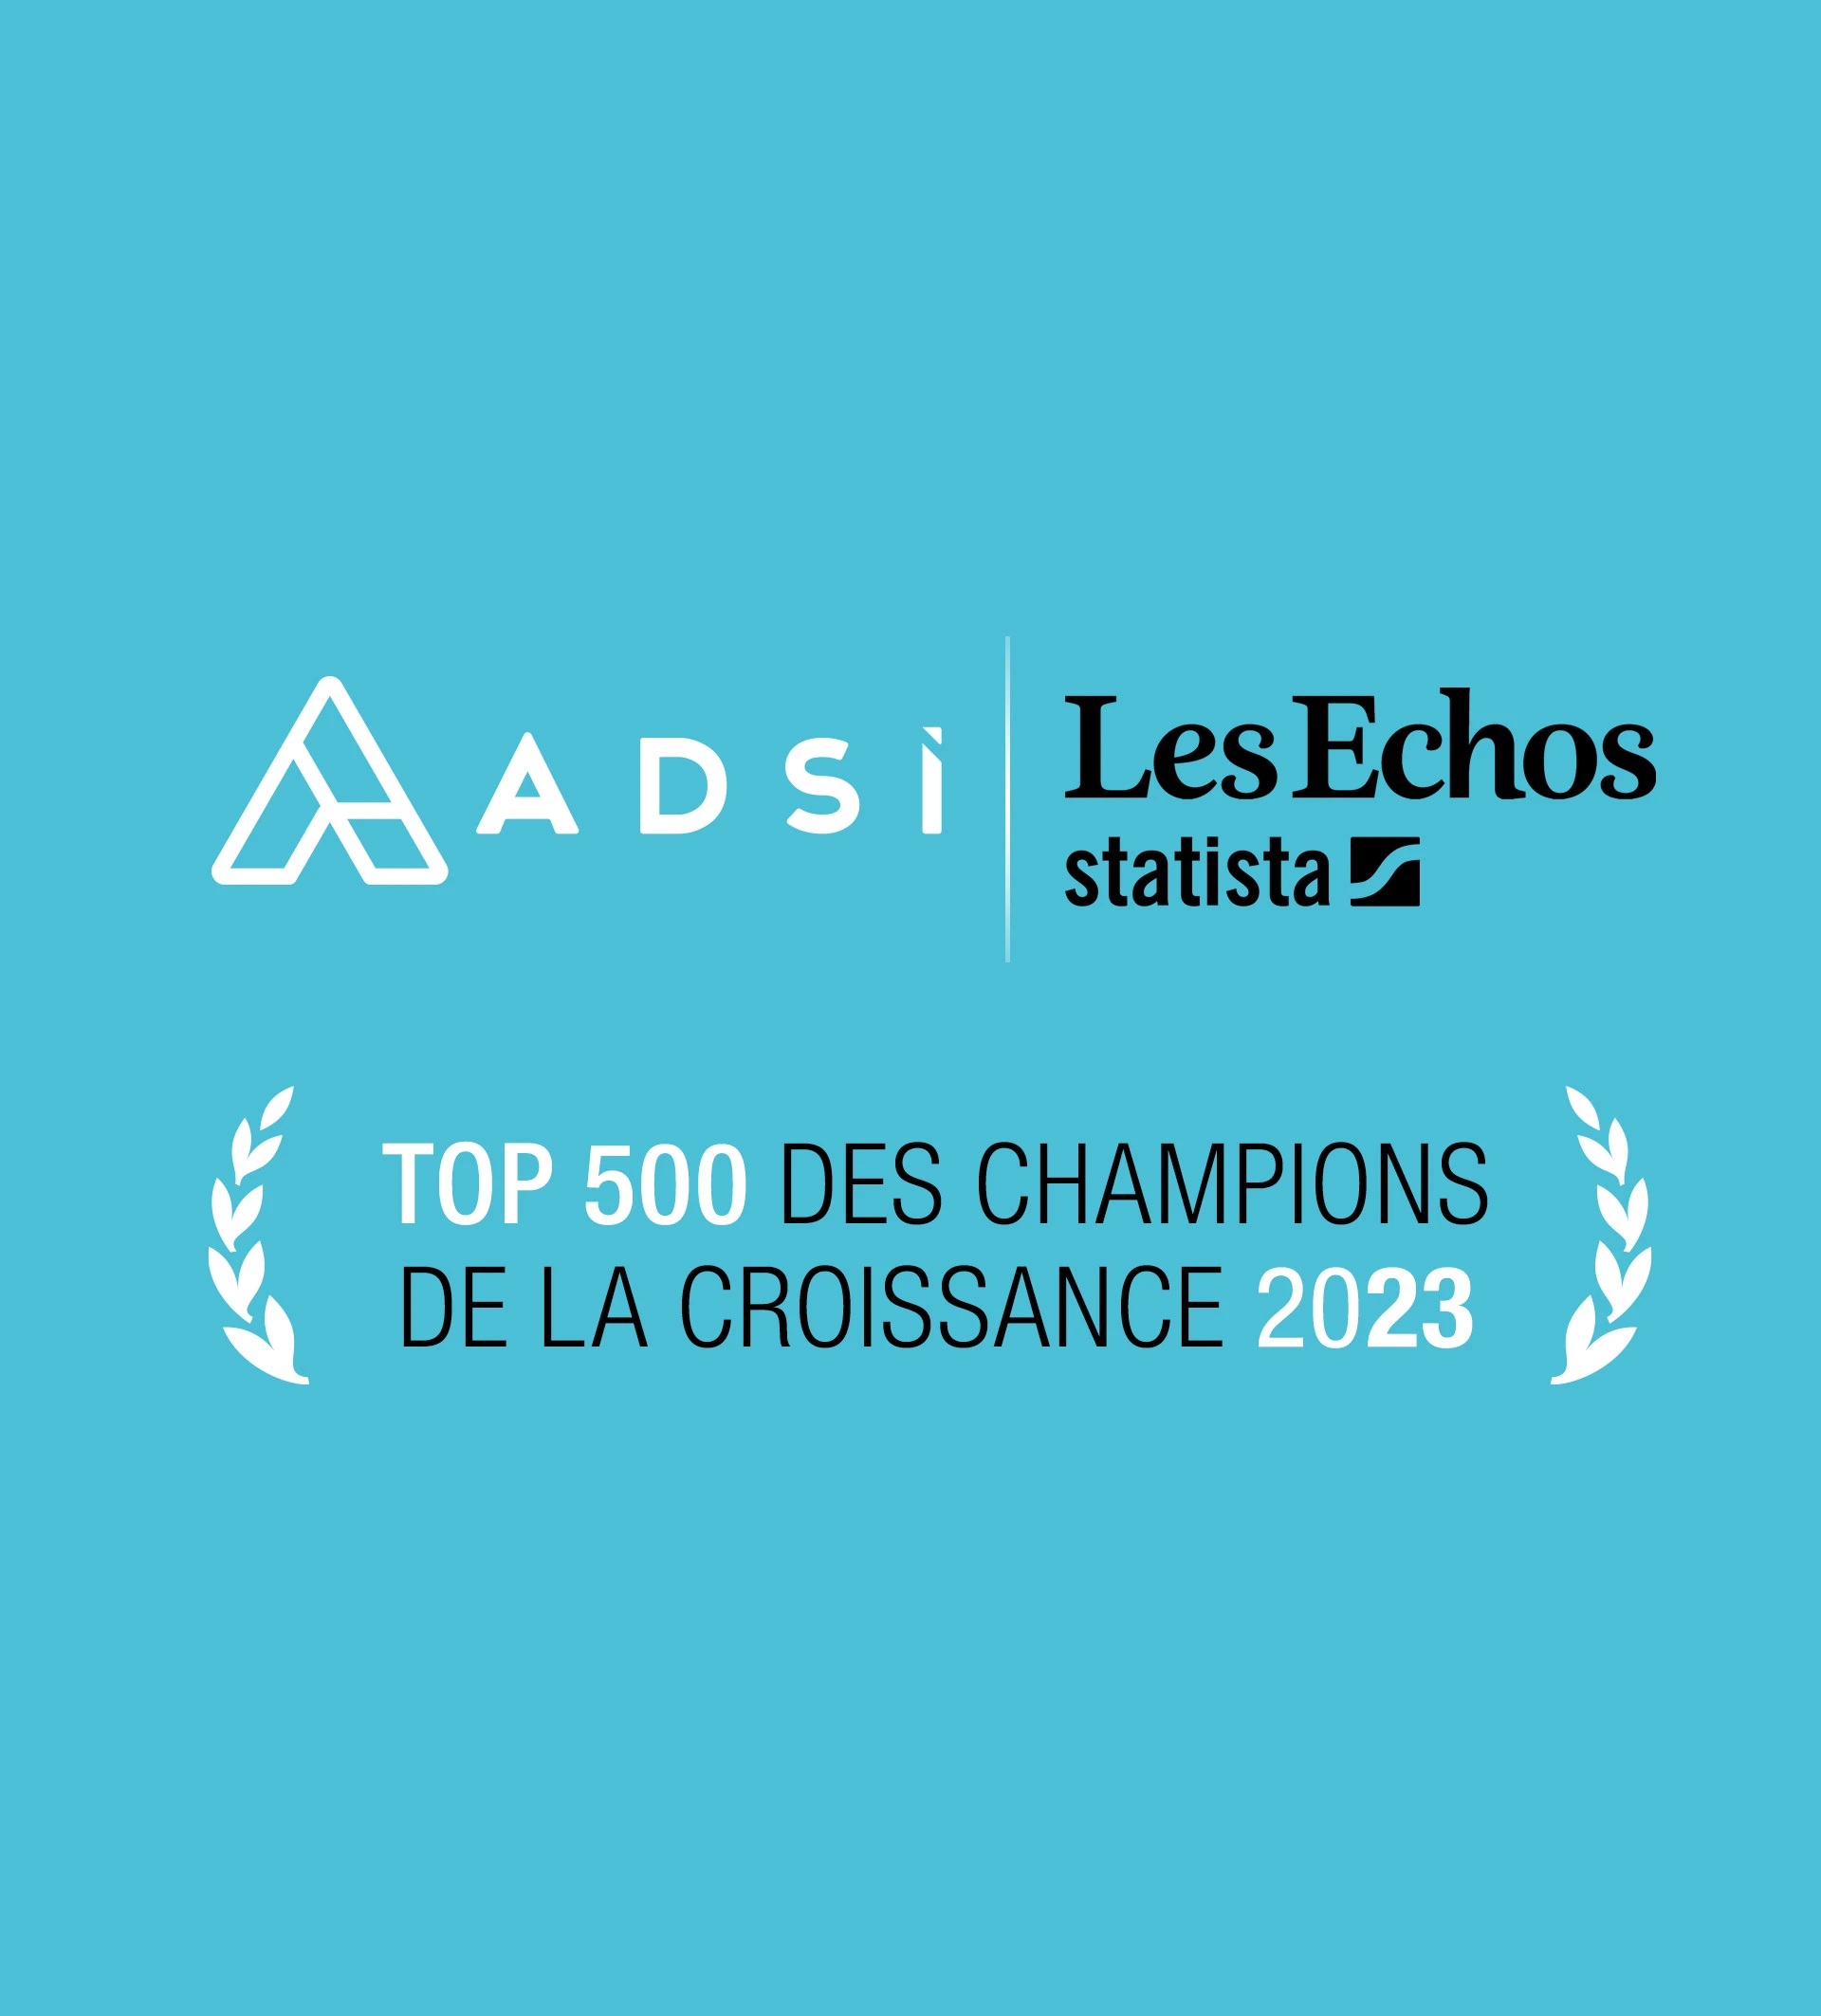 ADSI Top 500 Les Echos Champions de la Croissance